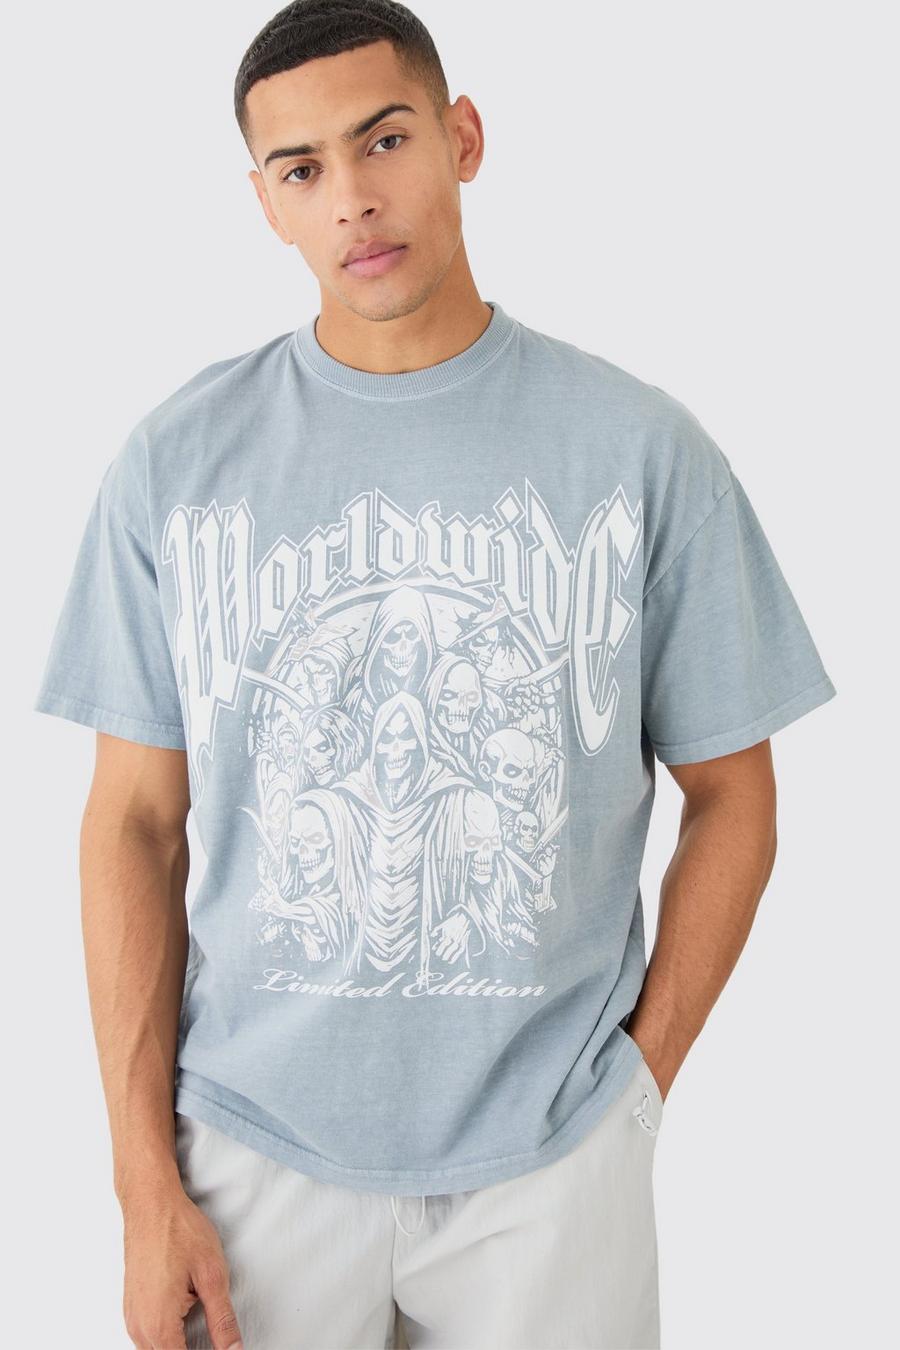 Slate blue Oversized Gothic Worldwide Wash T-shirt